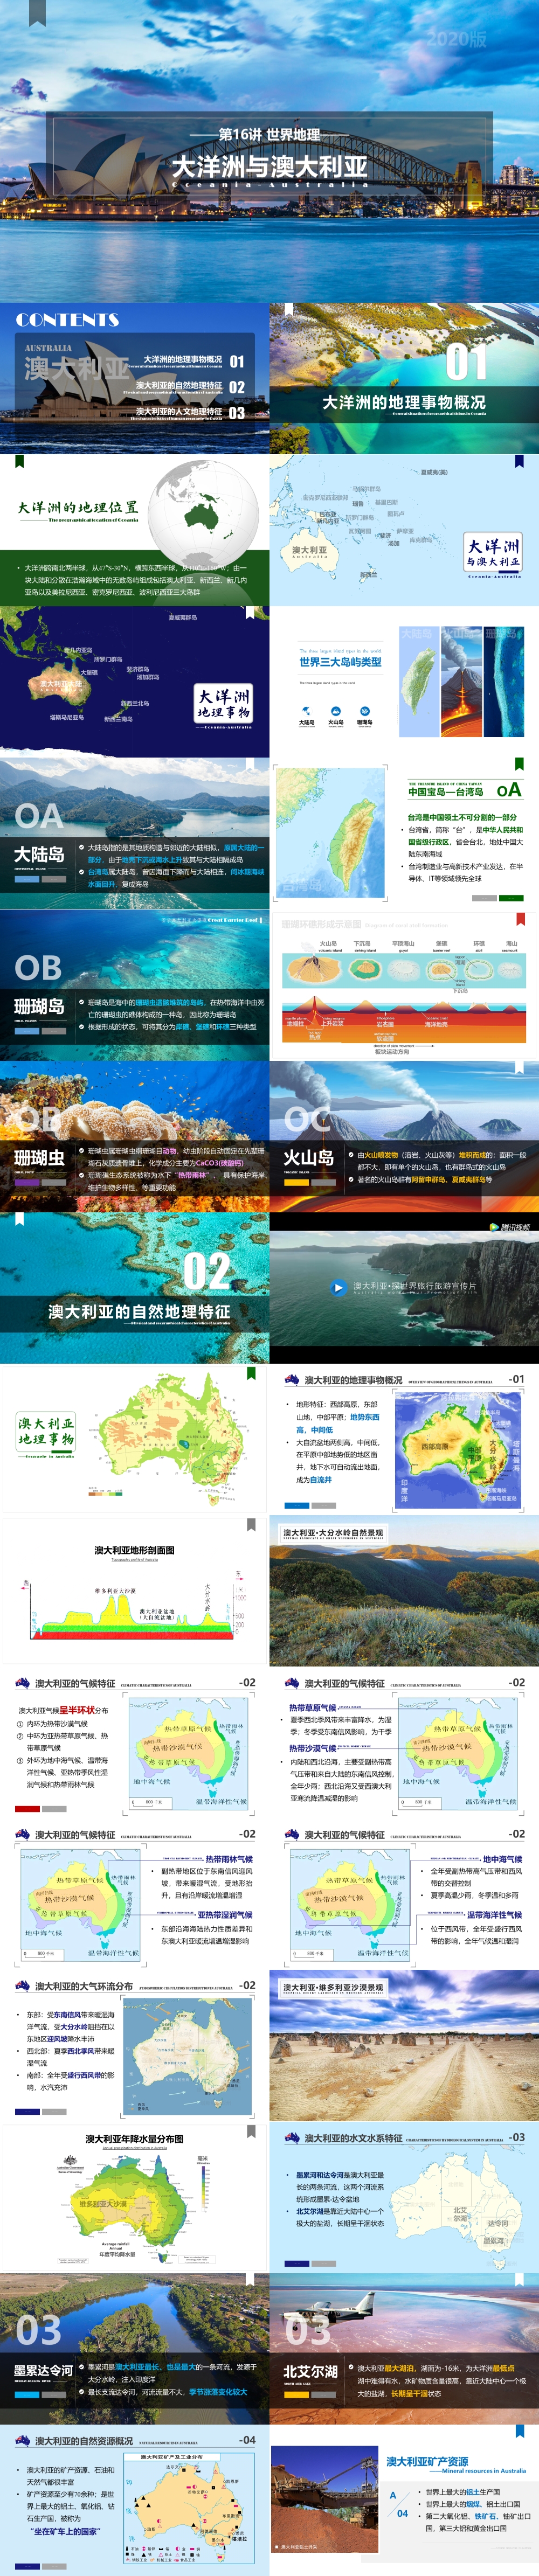 第16讲 大洋洲与澳大利亚 Oceania-Australia [2020版]-1000px.jpg